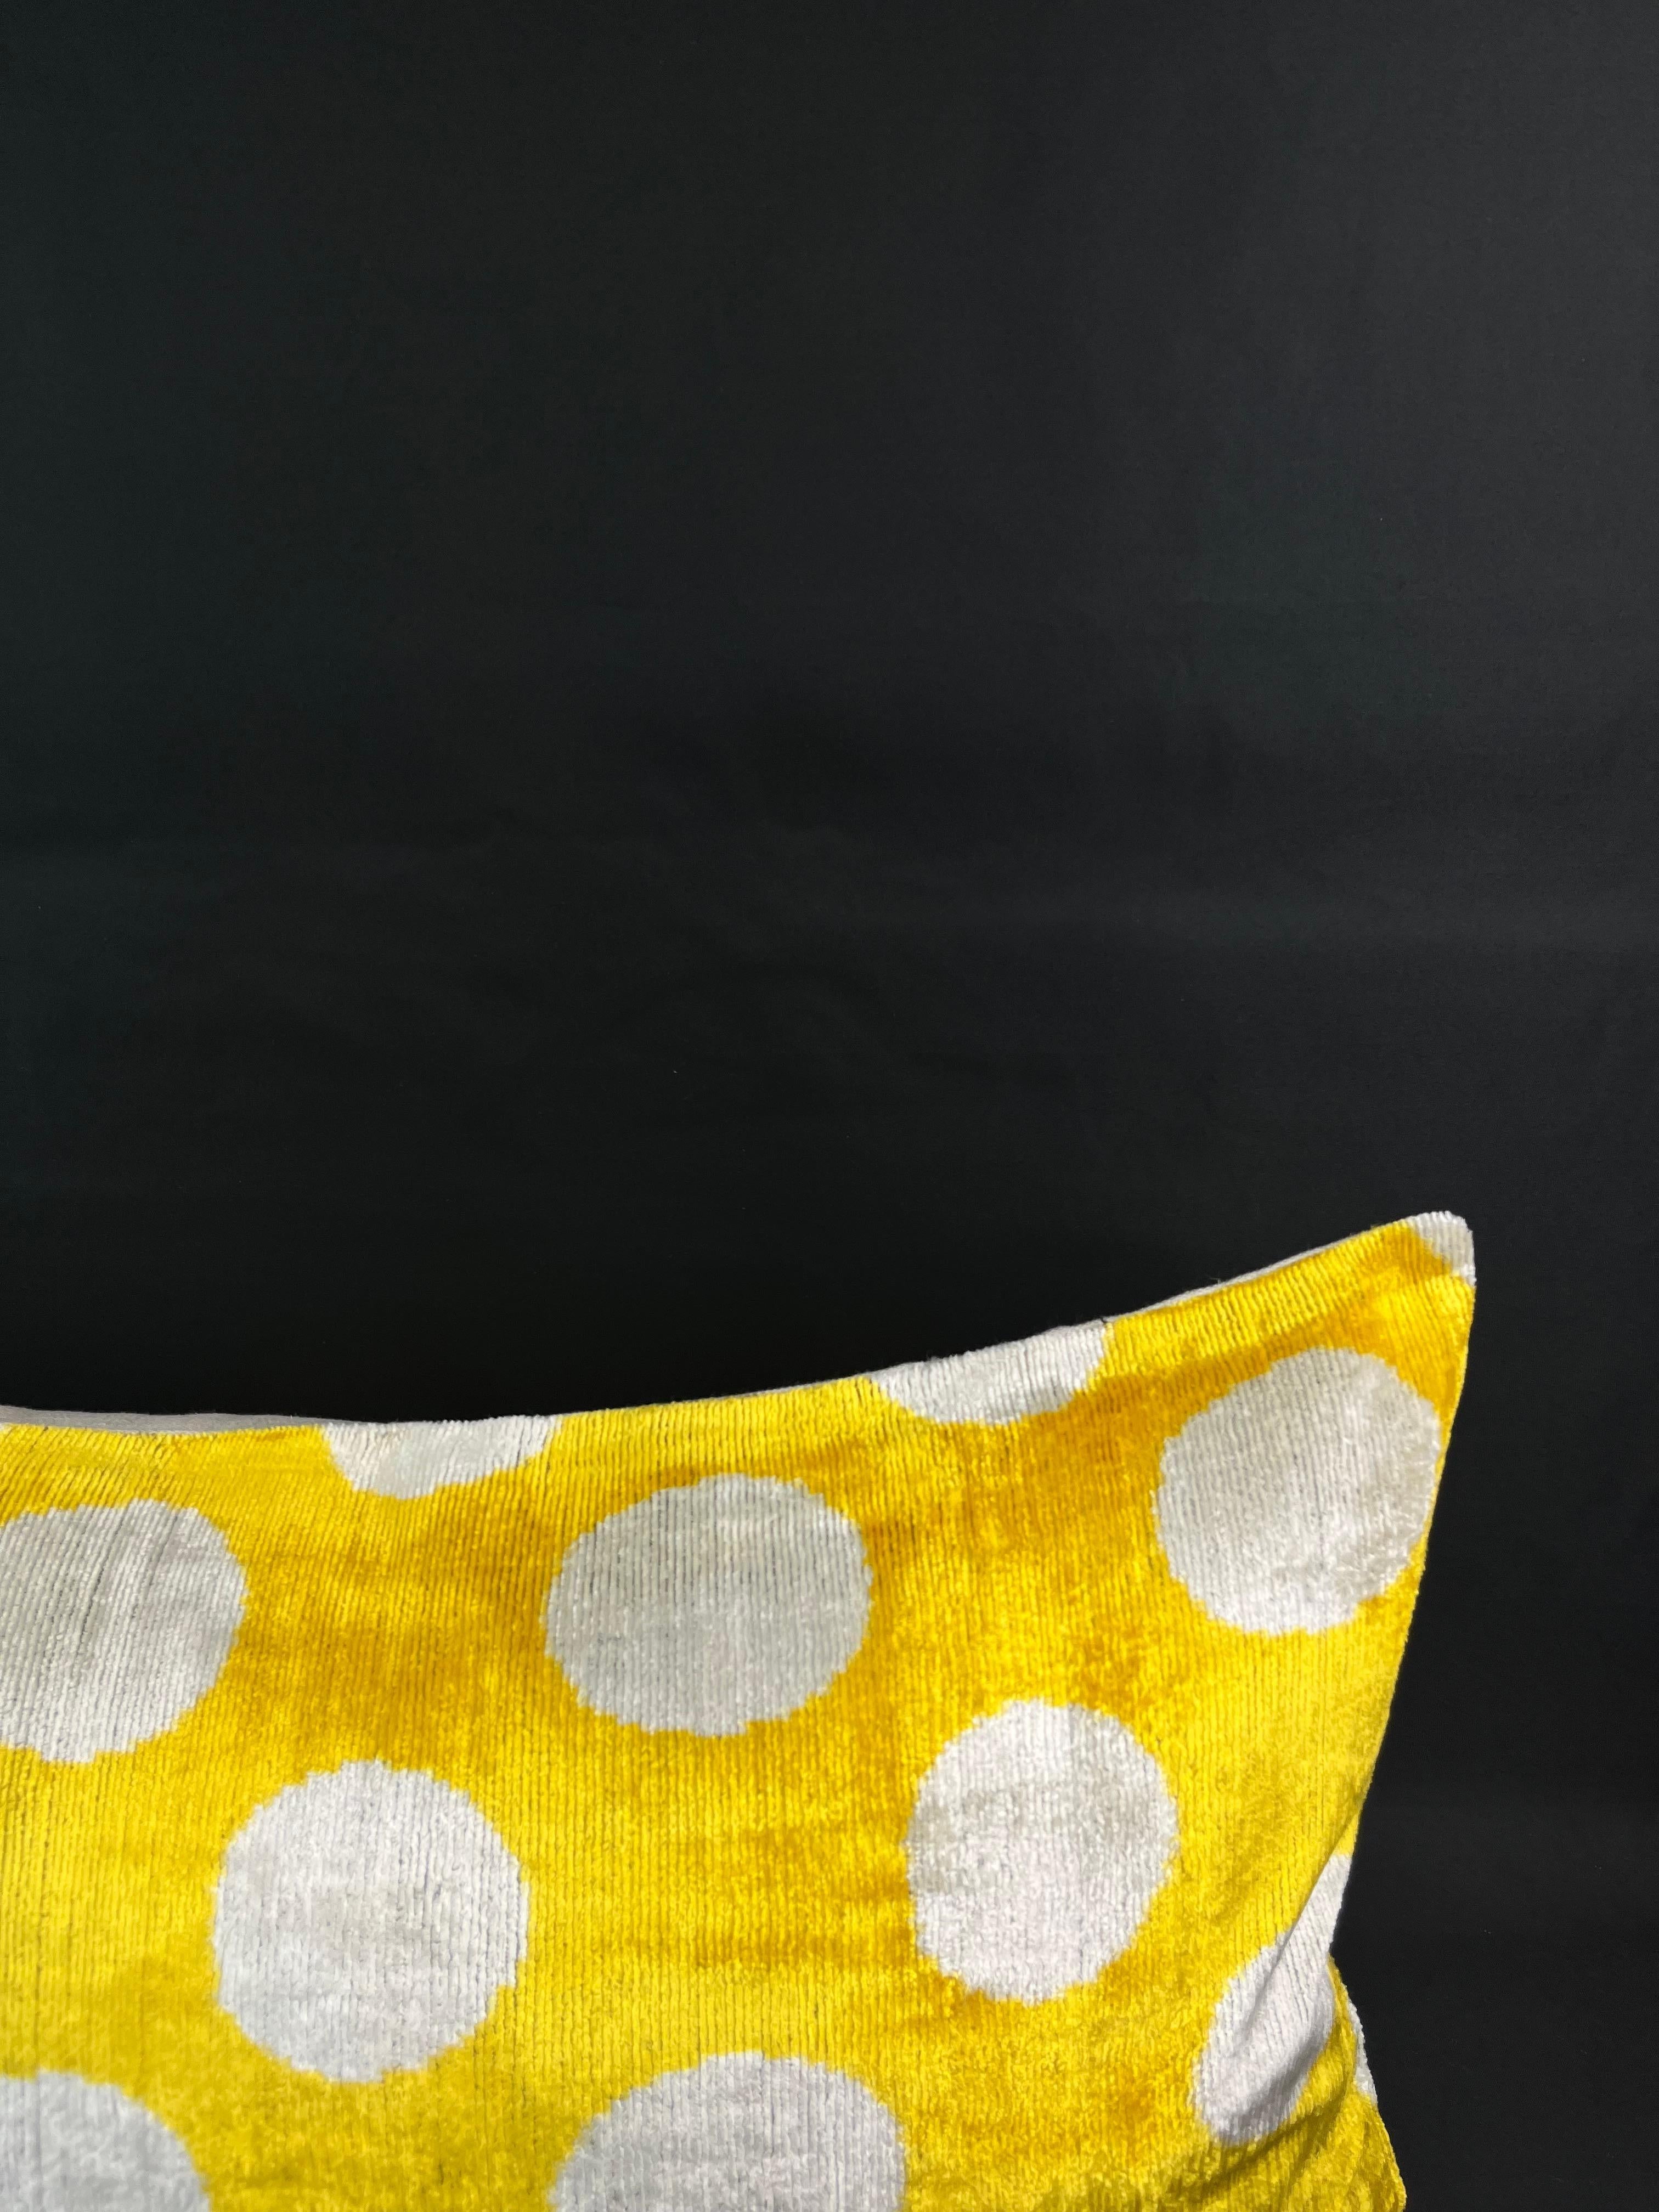 Modern Yellow Polka-Dot Pattern Velvet Silk Ikat Pillow Cover For Sale